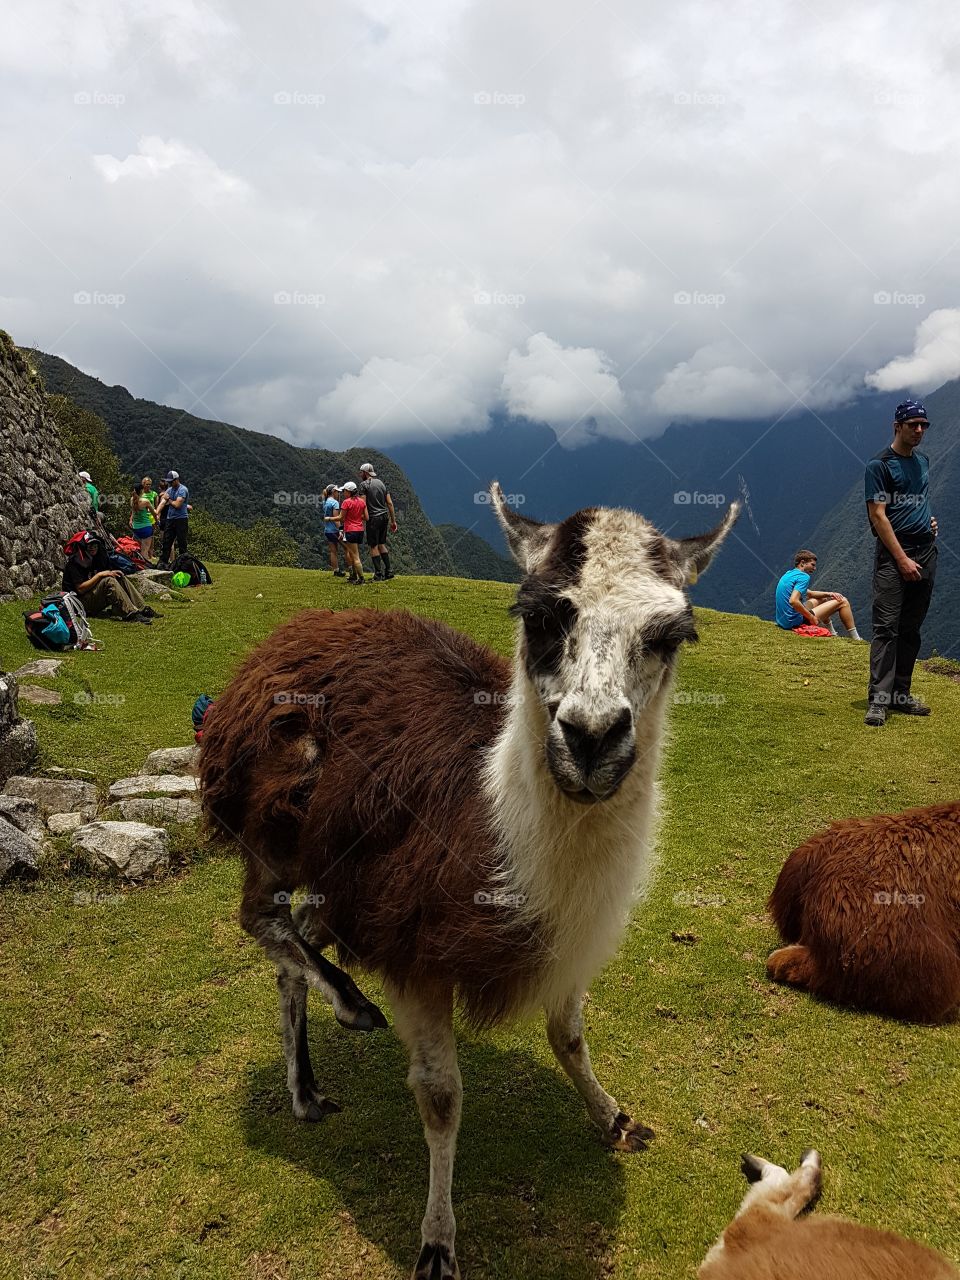 A curious Llama in Peru